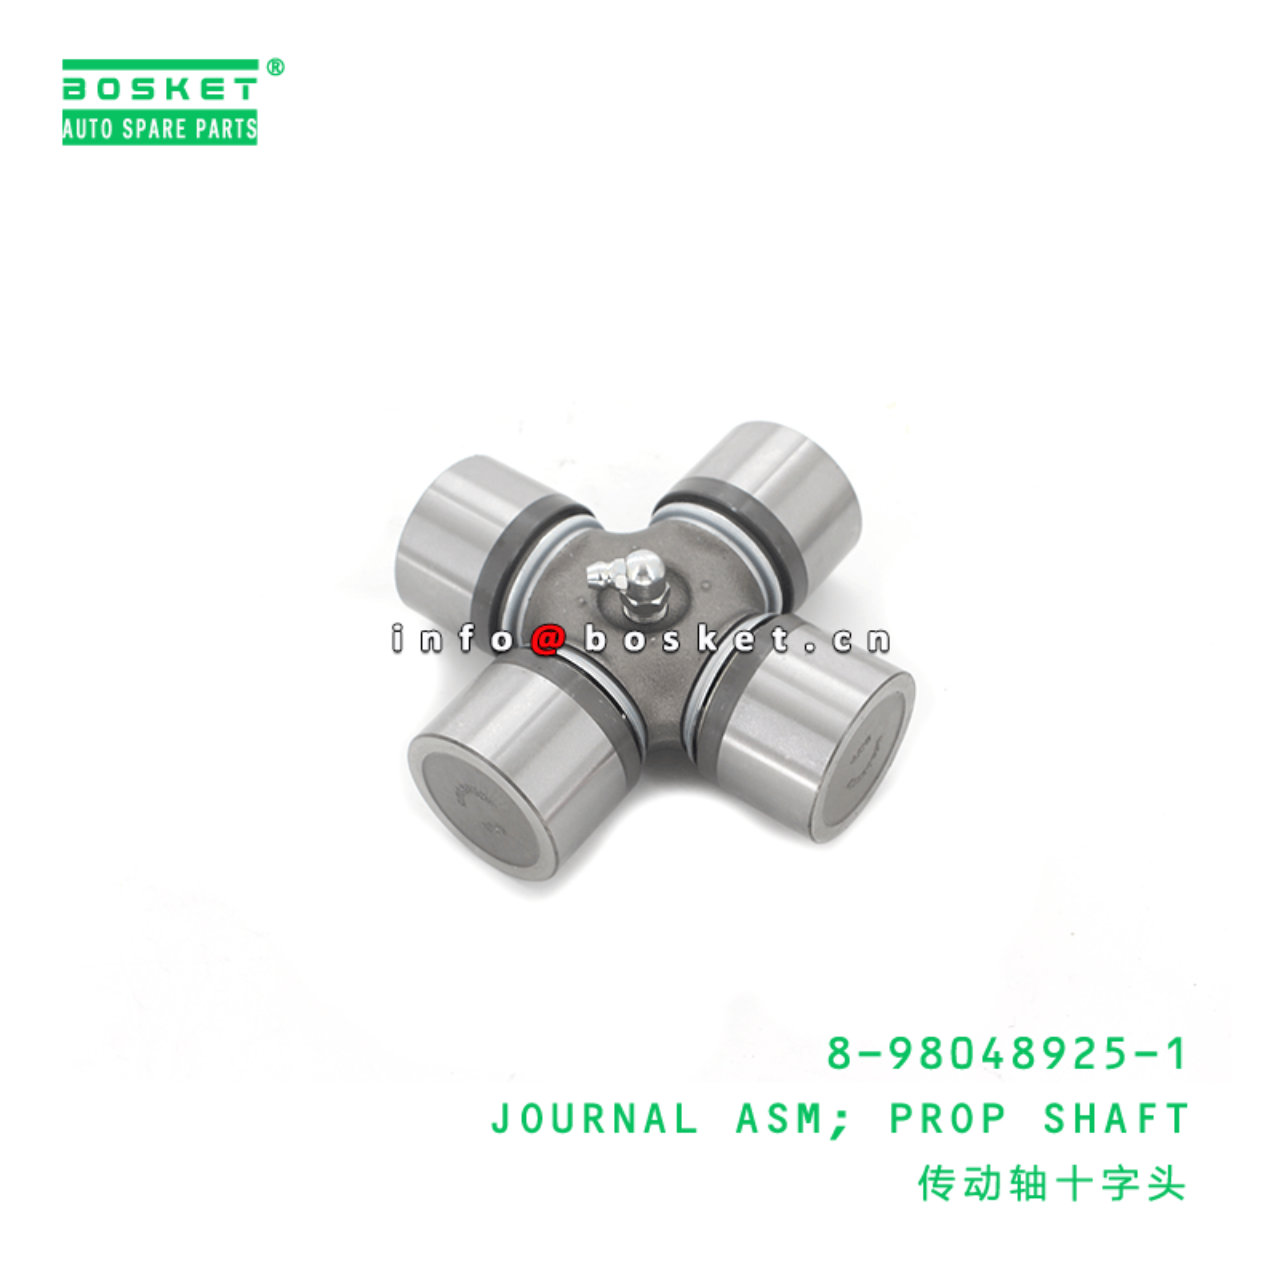 8-98048925-1 Prop Shaft Journal Assembly 8980489251 Suitable for ISUZU MFR12 4ZC1